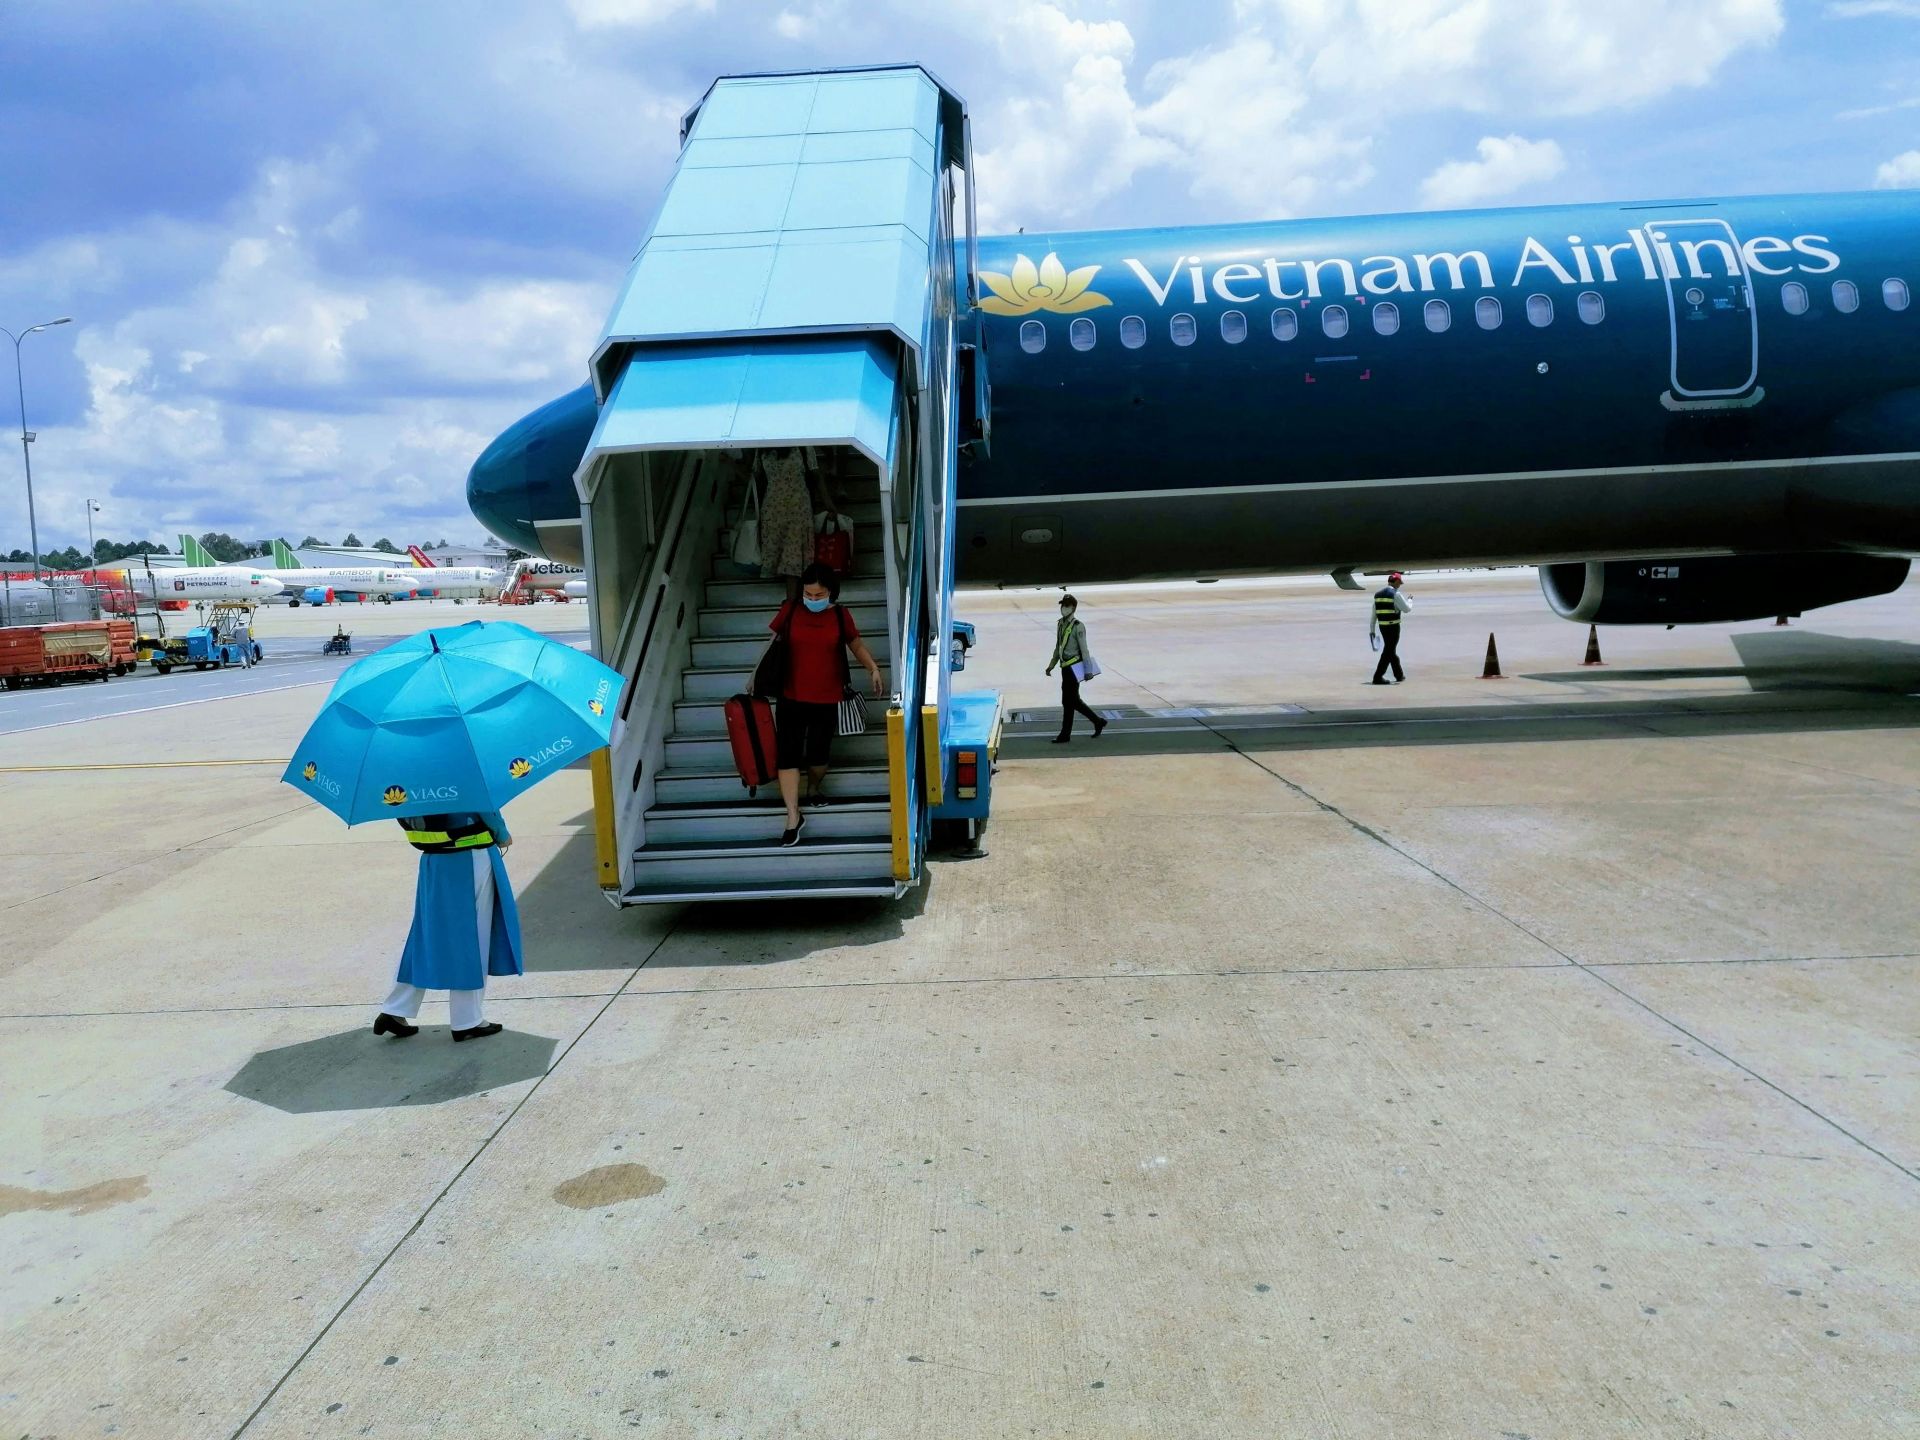 Năm hãng hàng không hiện đang hoạt động tại Việt Nam chưa đủ đáp ứng nhu cầu đi lại ngày càng tăng cao. (hình: Unsplash